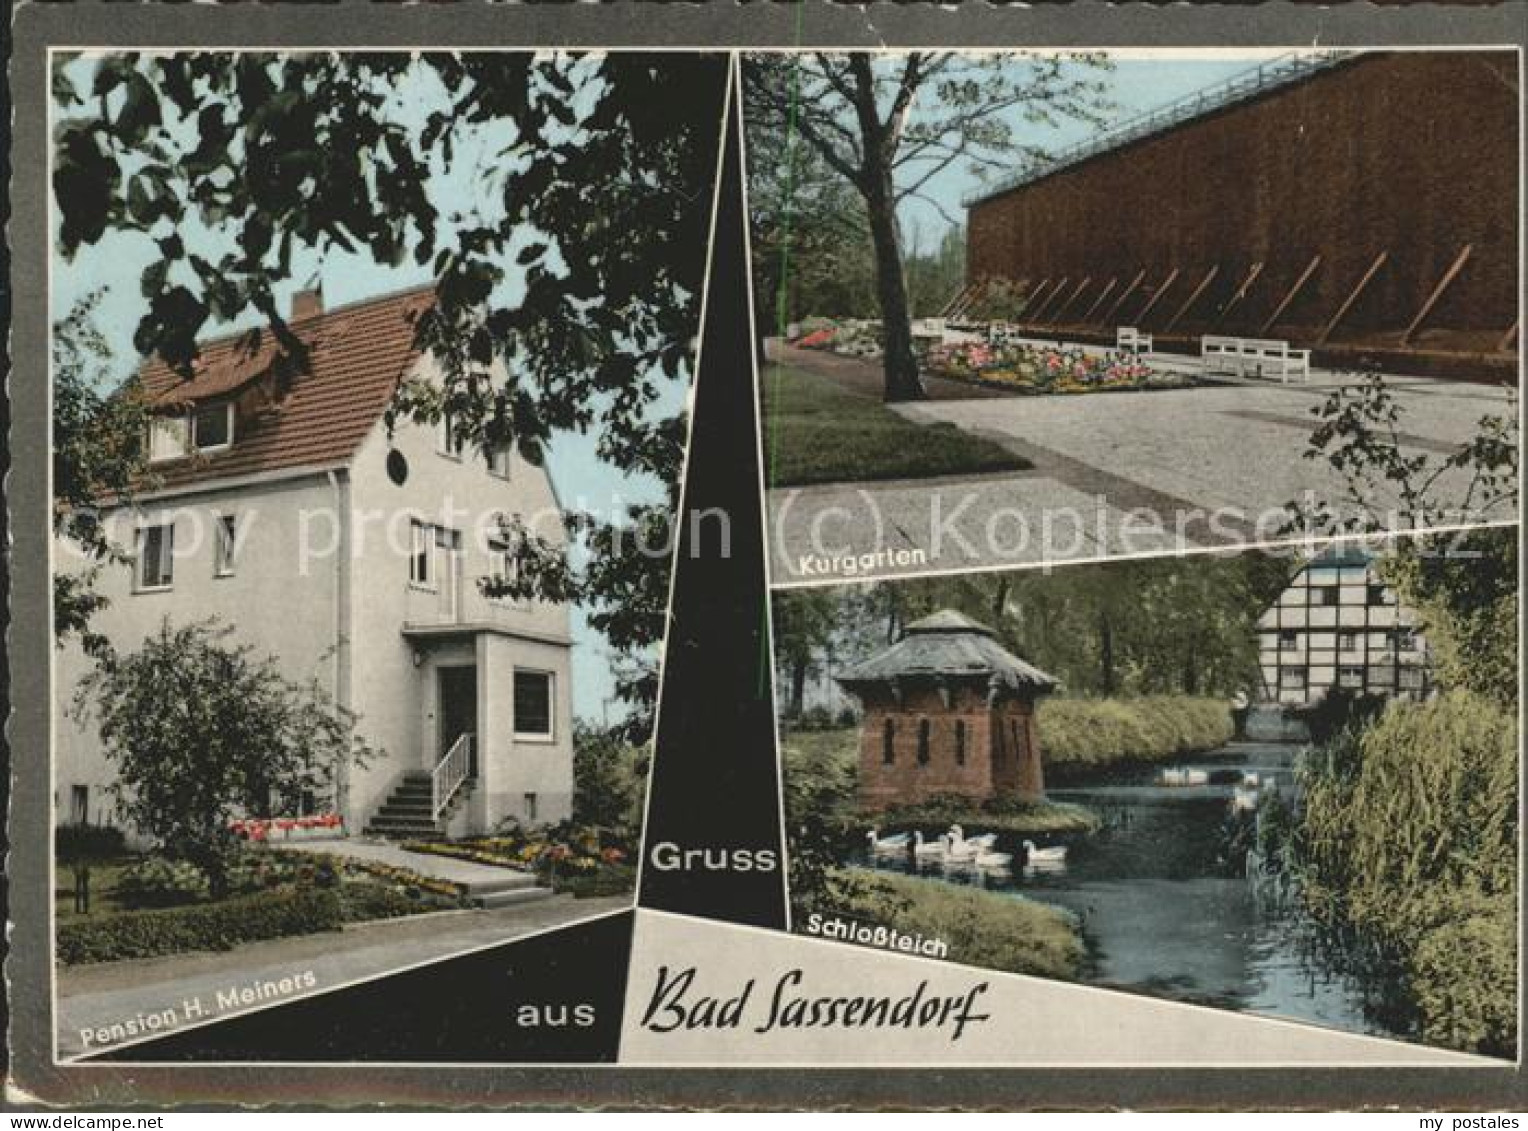 41500417 Bad Sassendorf Kurgarten Schlossteich Pension H. Meiners Bad Sassendorf - Bad Sassendorf